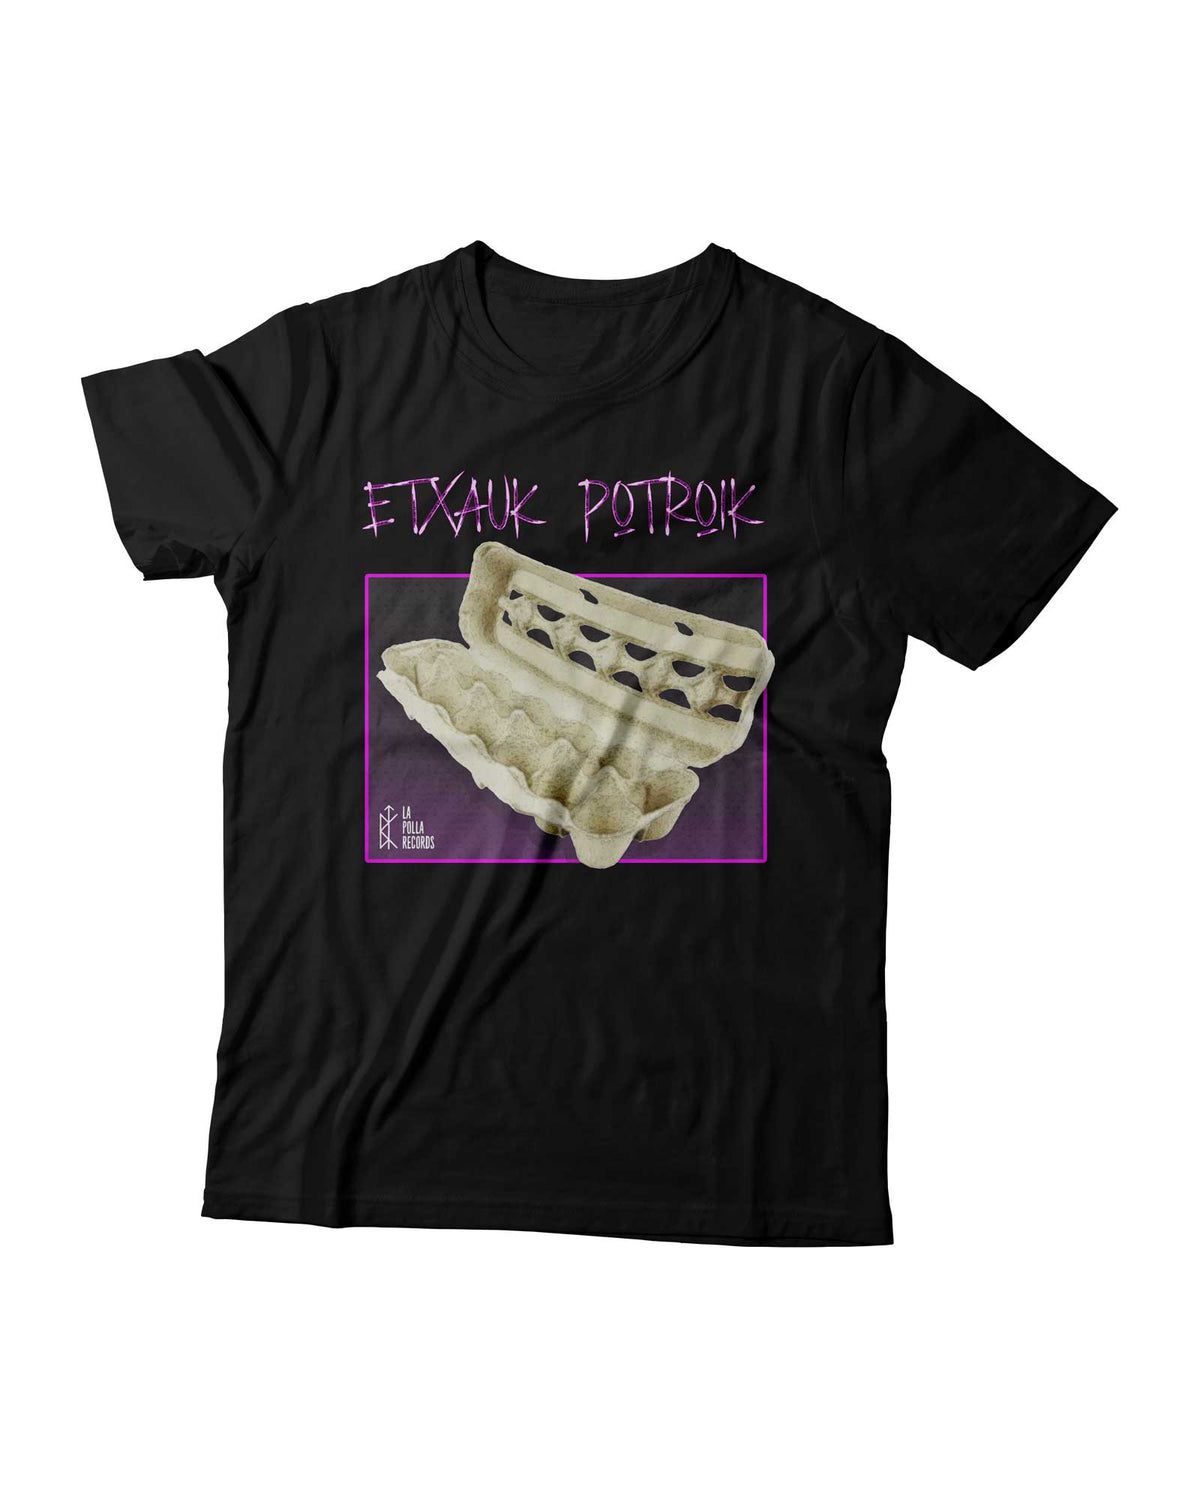 La Polla Records - Camiseta Etxauk Potroik - Negra - D2fy · Rocktud - Evaristo Páramos